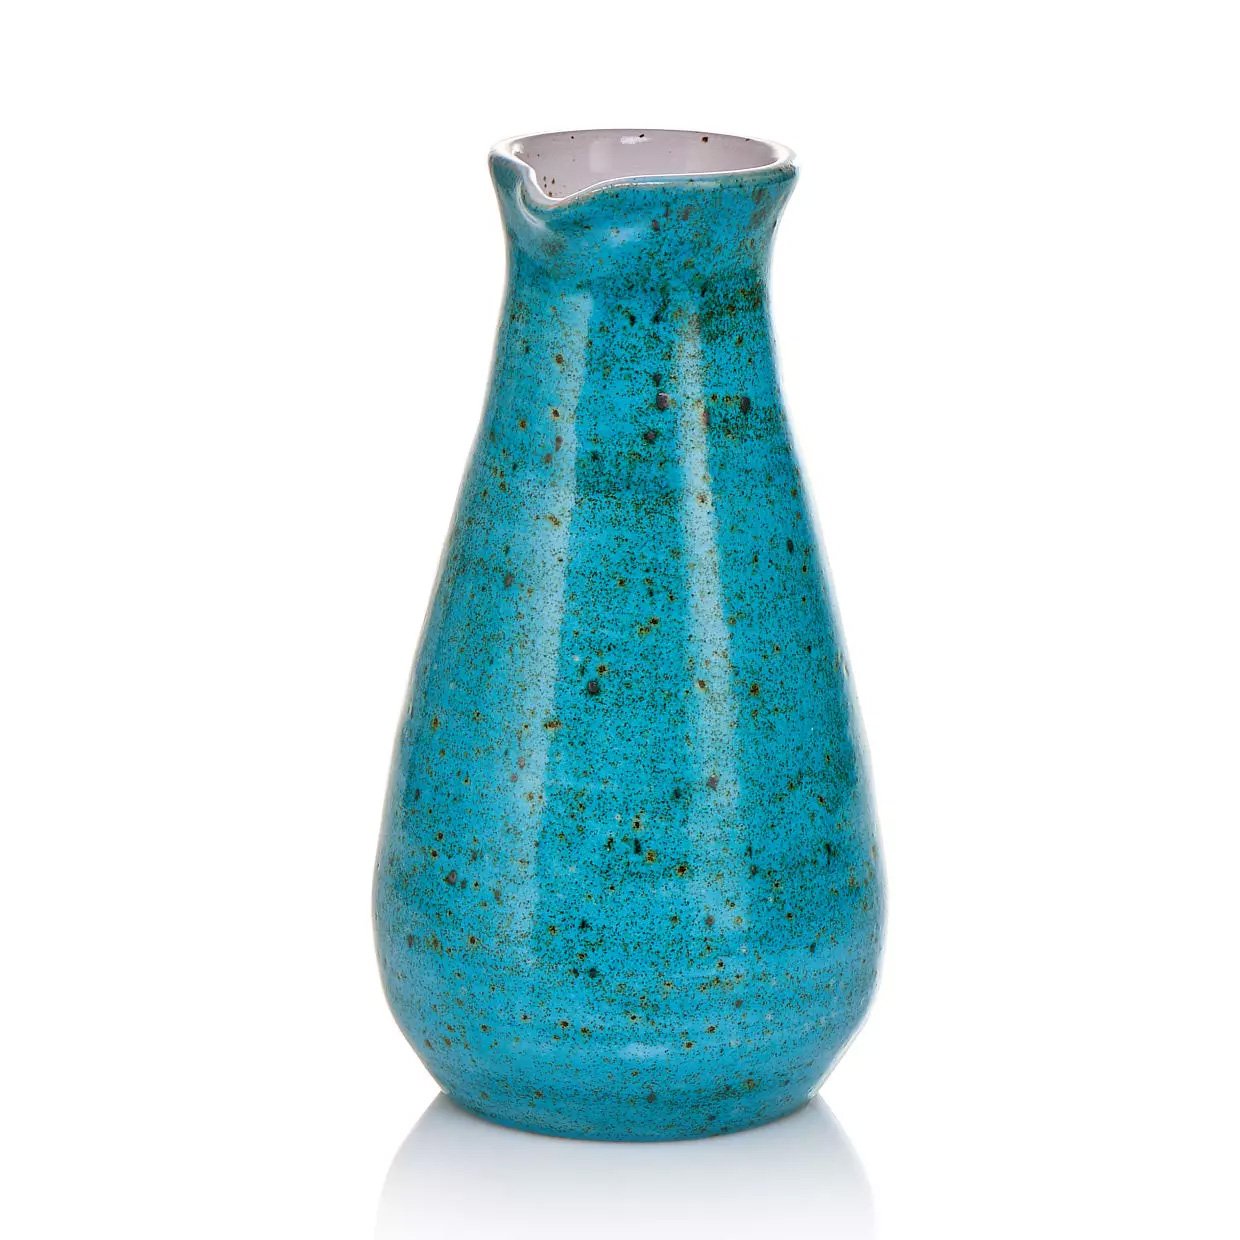 Blue vase product image